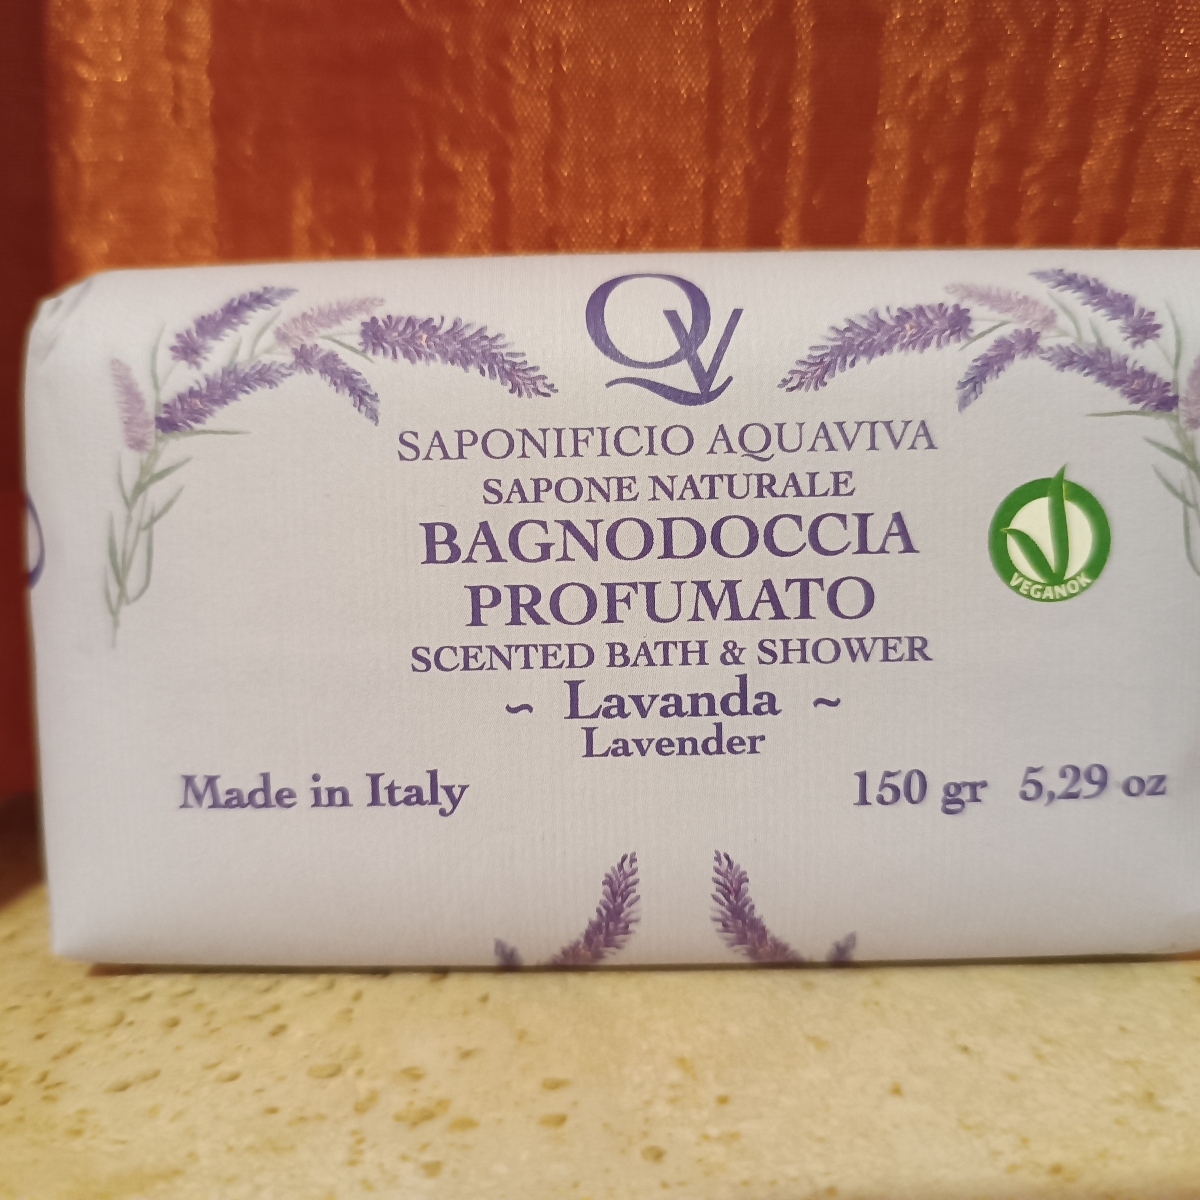 Saponificio Aquaviva Sapone naturale lavanda Reviews | abillion